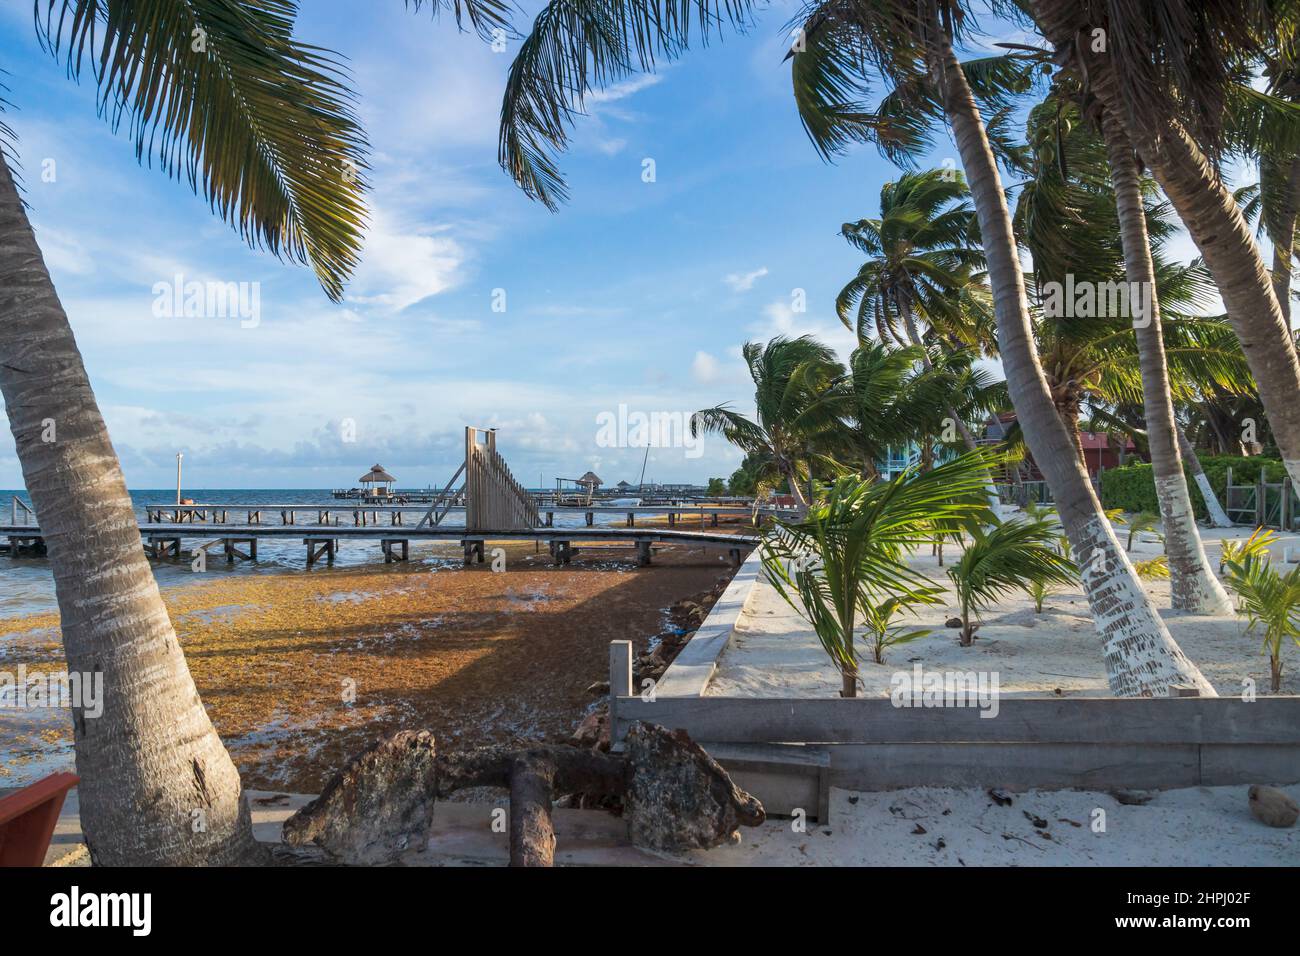 Alghe di Sargassum, alghe marine, lavate a riva l'idilliaca spiaggia di sabbia con palme di Caye Caulker, Belize Foto Stock